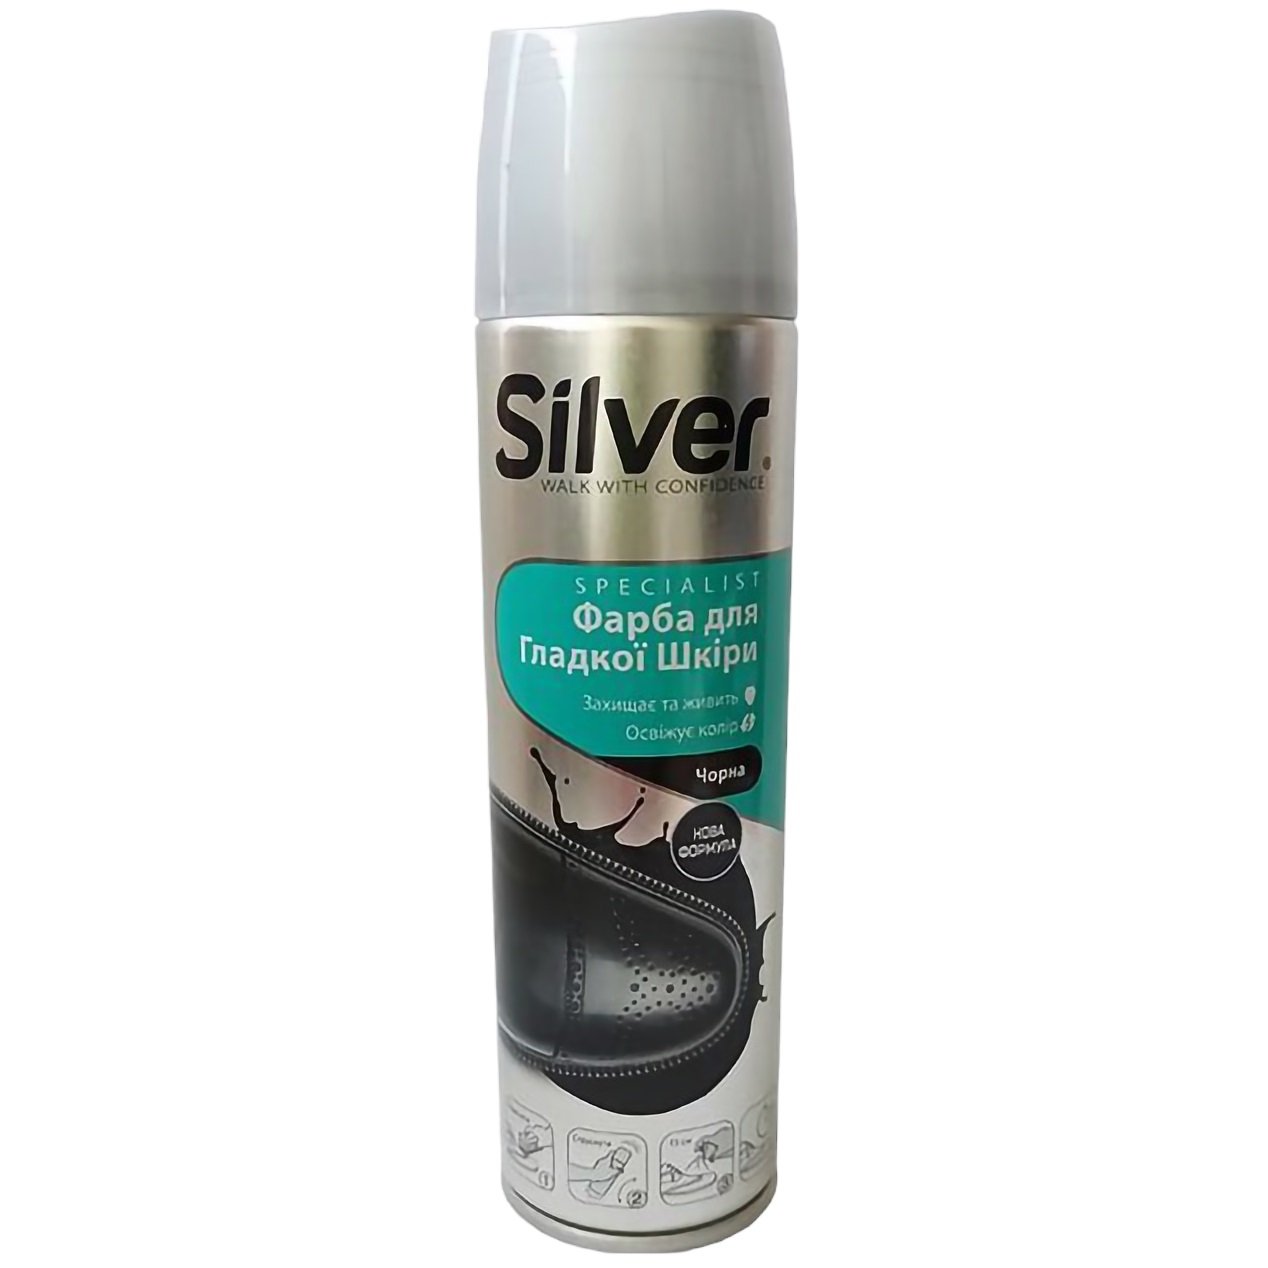 Фарба для гладкої шкіри Silver, чорна, 250 мл - фото 1